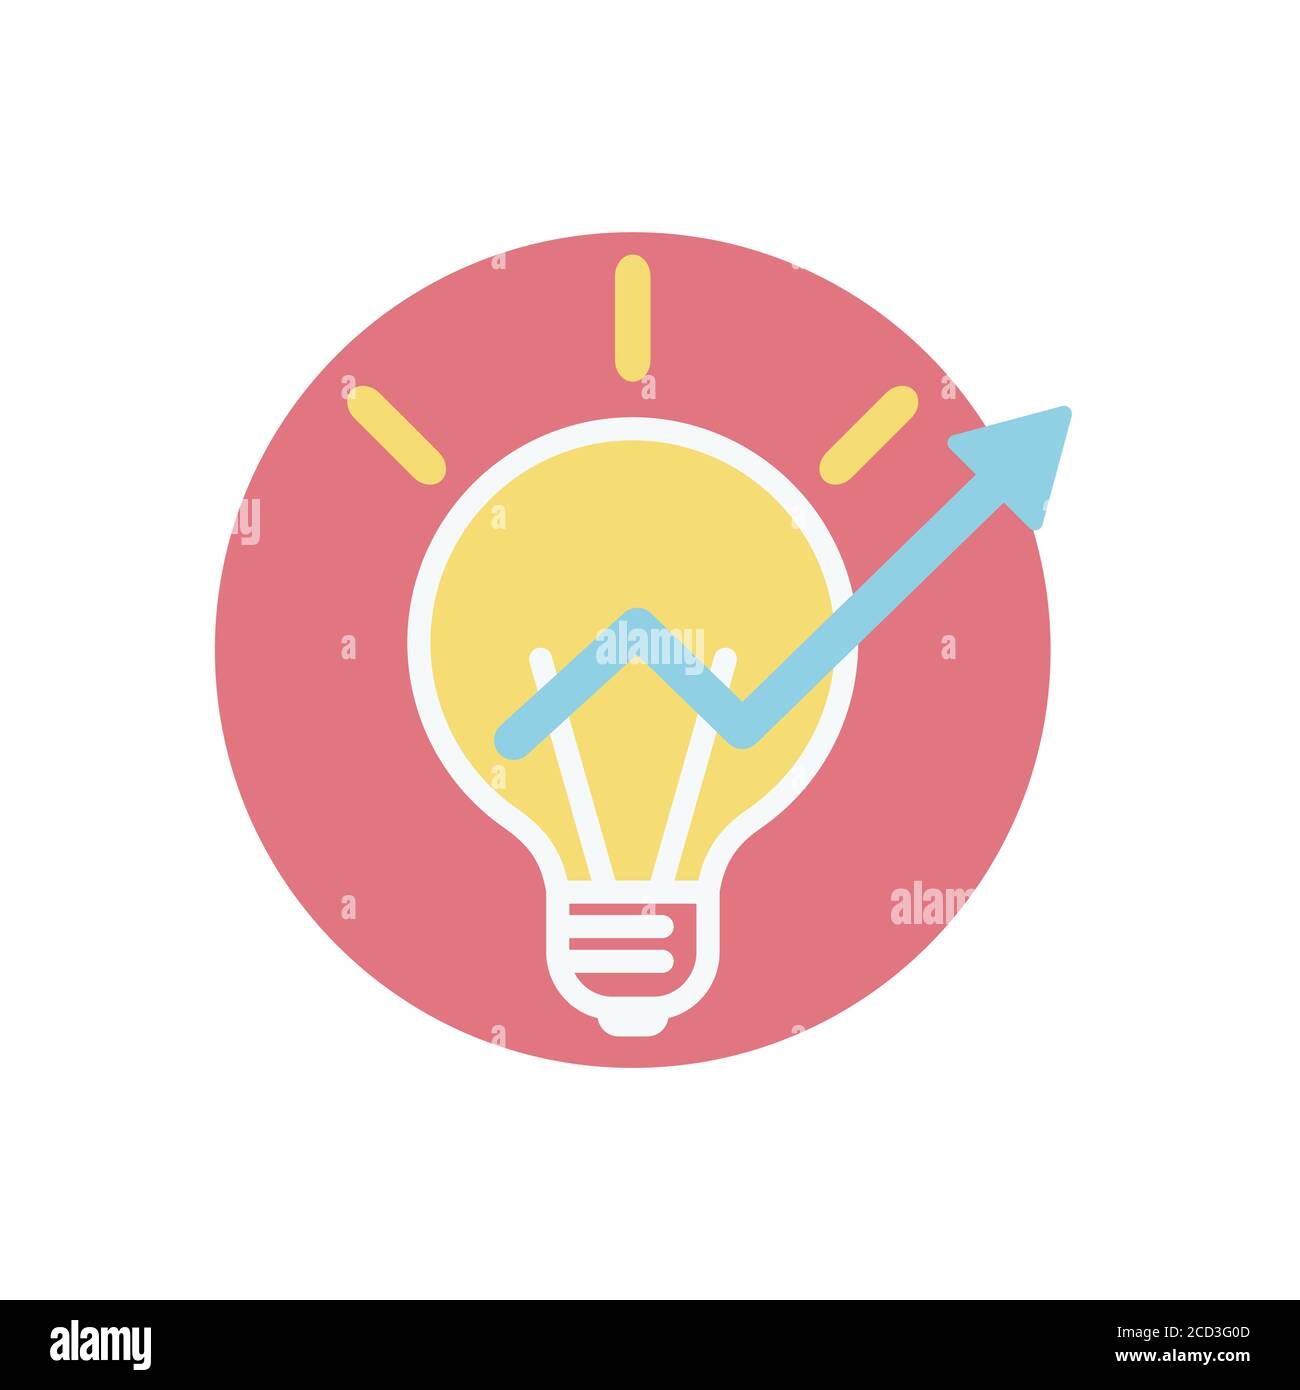 Icône entrepreneuriat. Symbole d'une ampoule pour symboliser une grande idée, un démarrage, un remue-méninges ou une idée d'affaires. Illustration de Vecteur